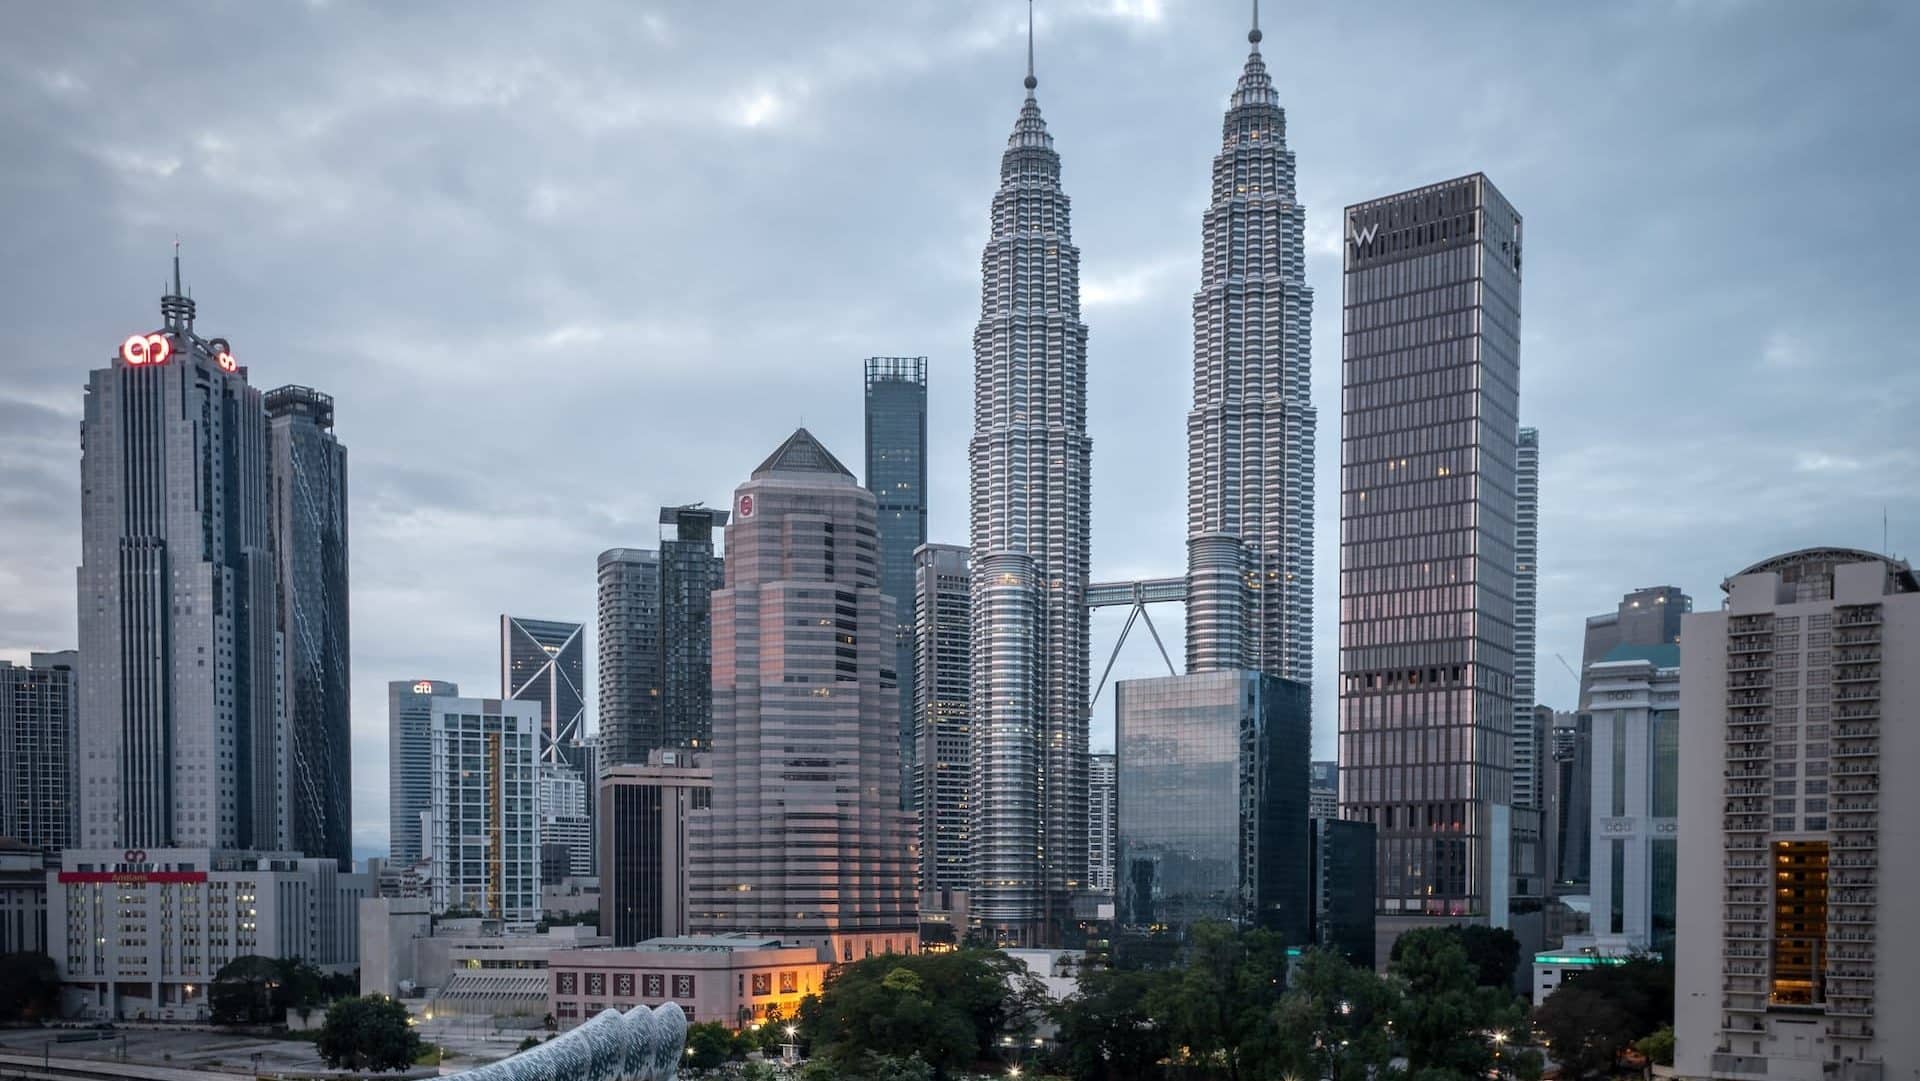 Composto dai quartieri più centrali della città, il Kuala Lumpur City Centre è la zona migliore per i turisti della capitale malese